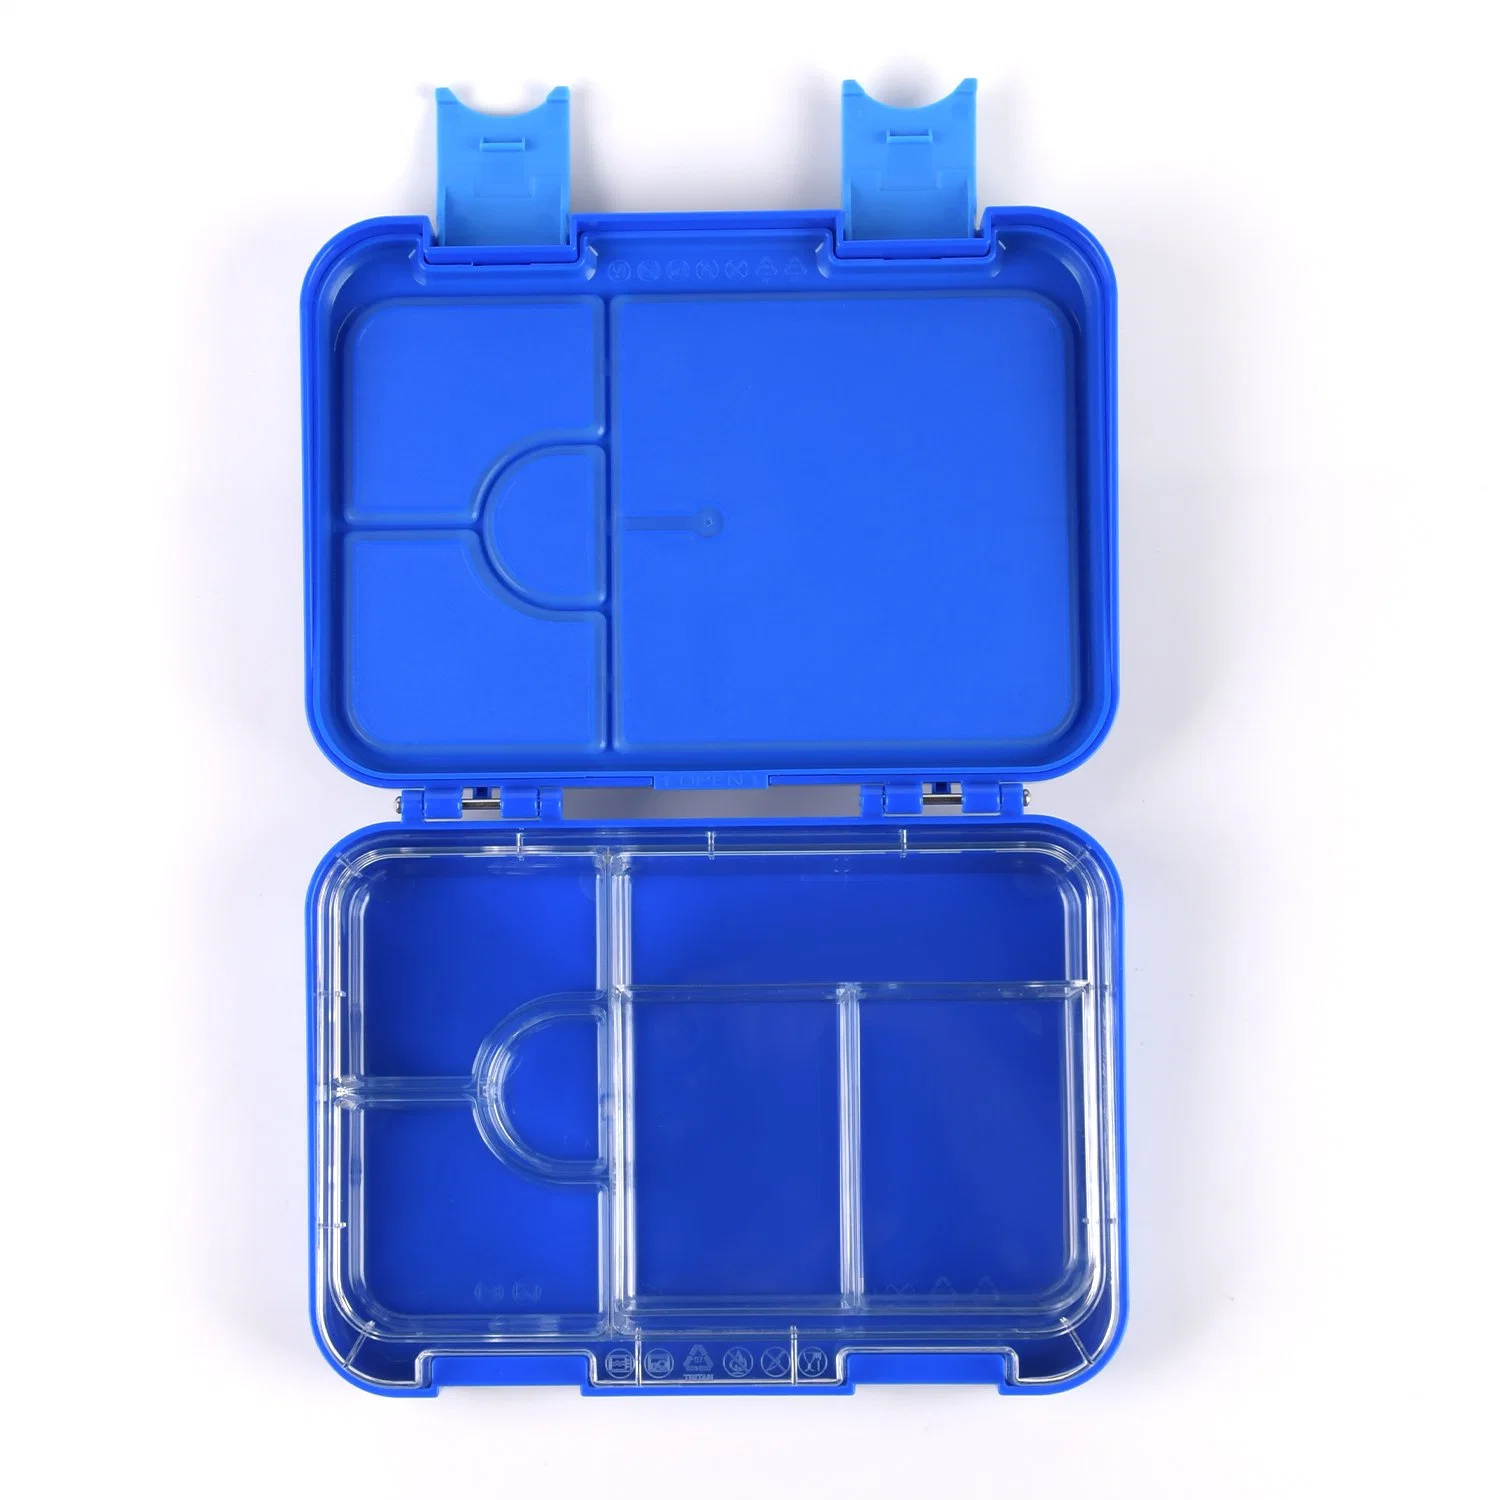 Aohea Kunststoff-Aufbewahrung 4 Fächer Kinder Mini Bento Lunch Box Eco Geschirr-Sets